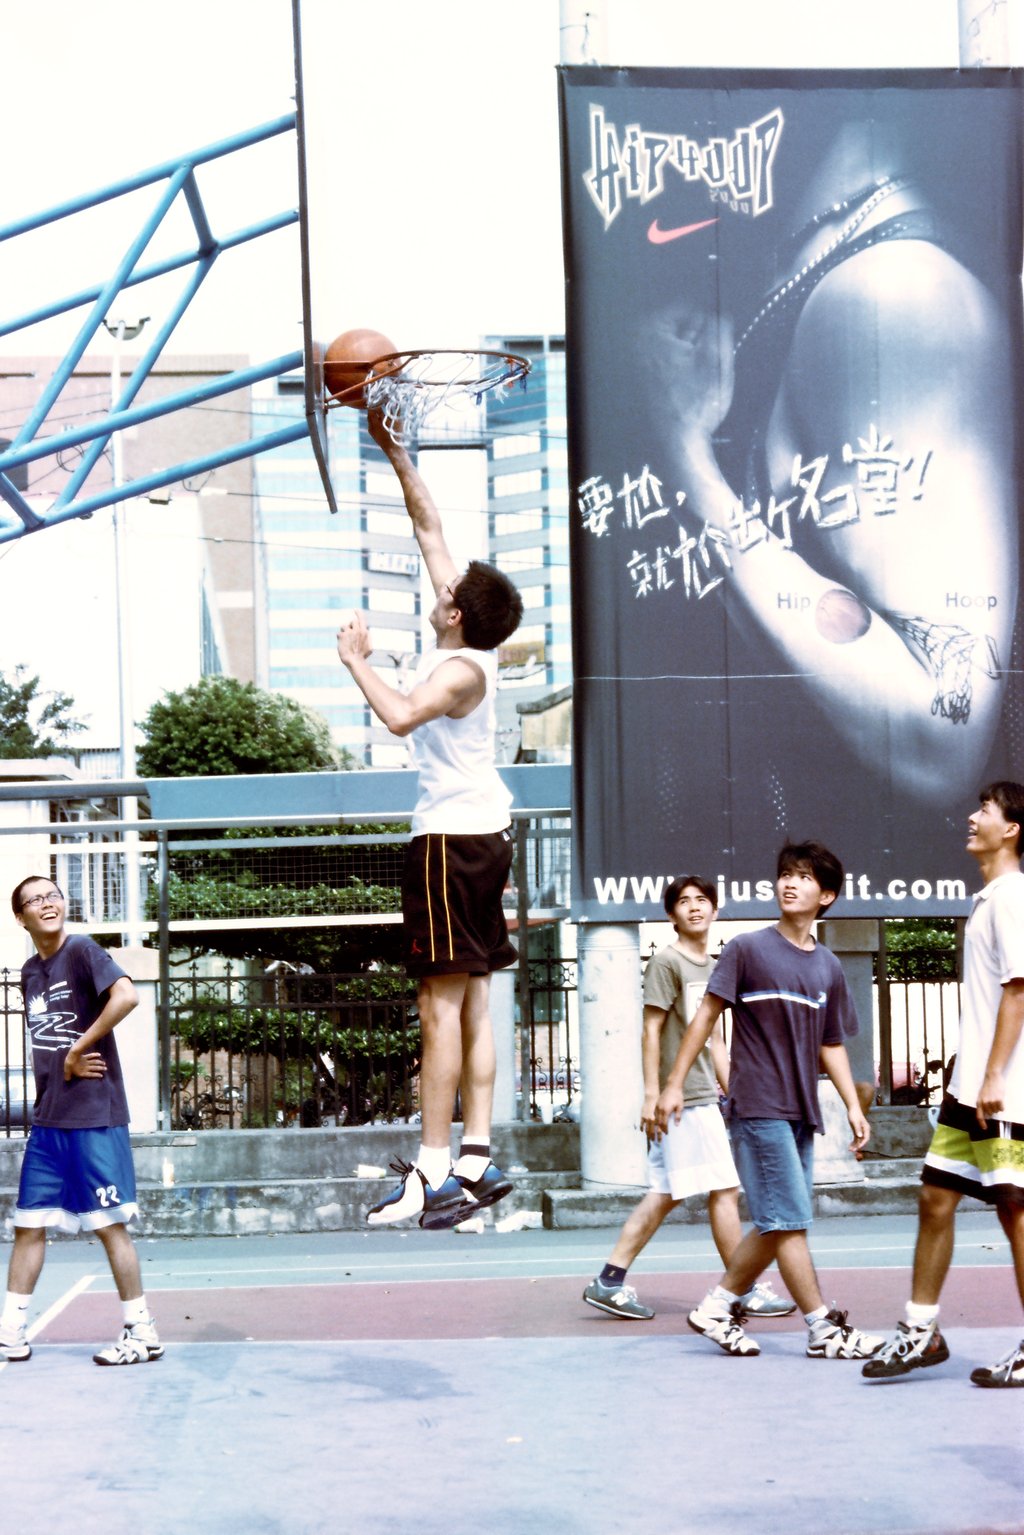 正片籃球運動攝影一中街台中體育場戶外籃球